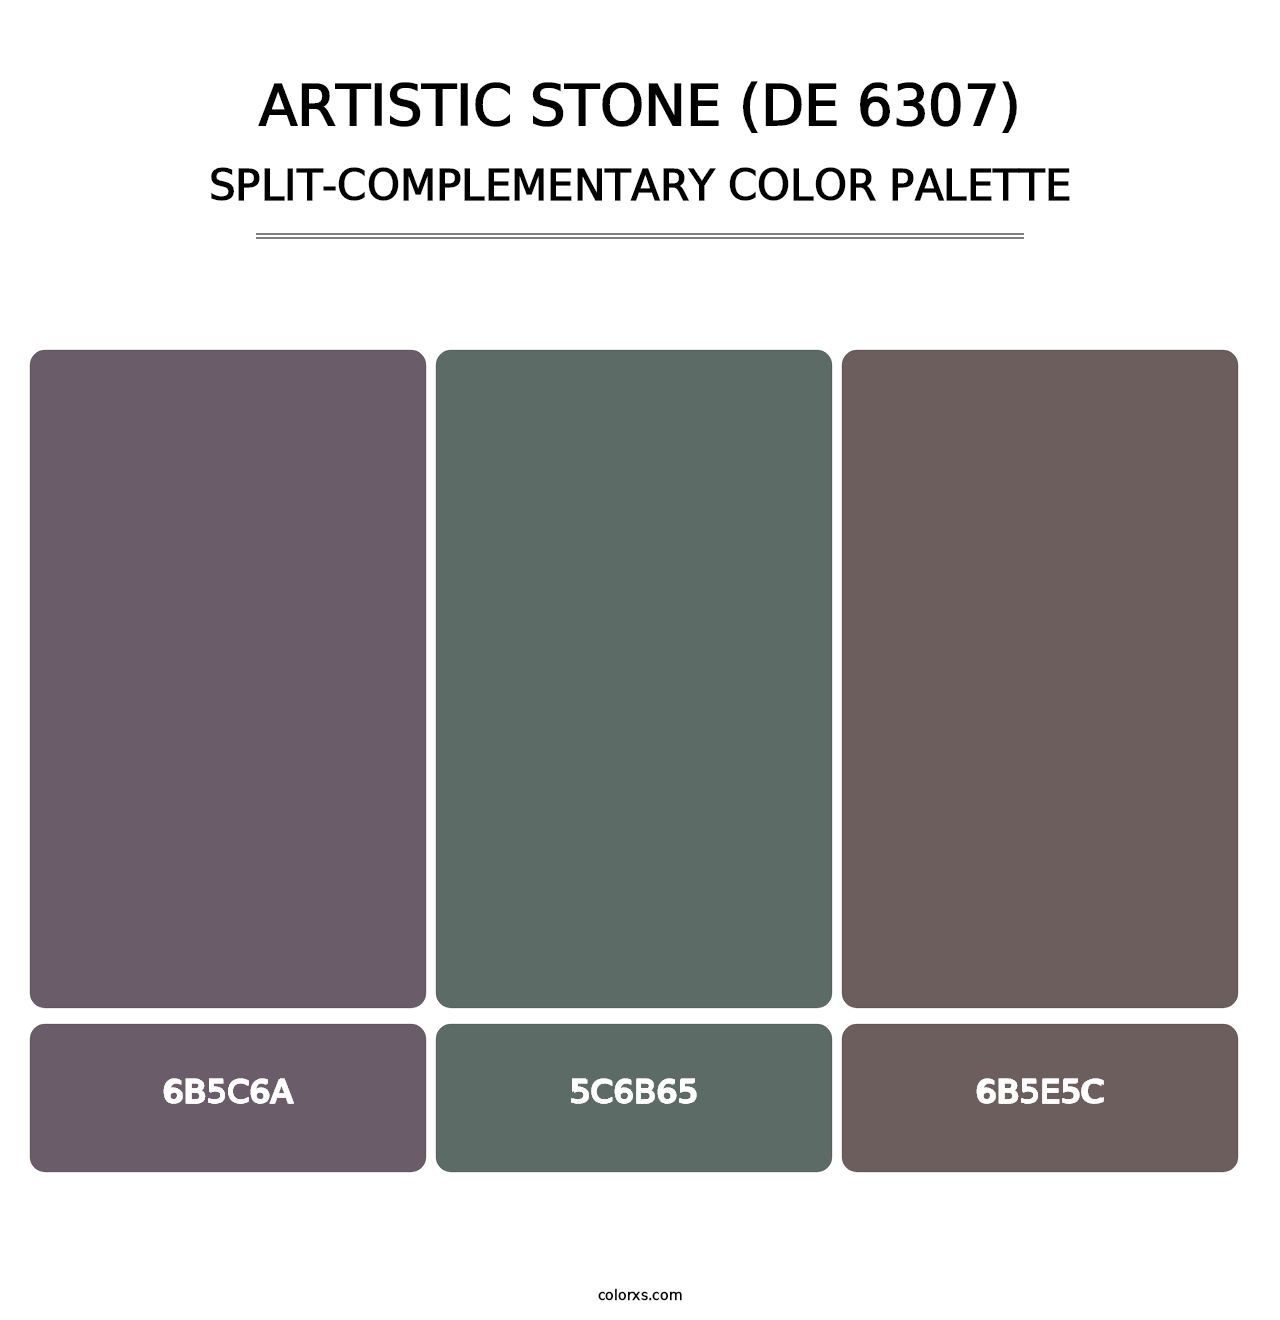 Artistic Stone (DE 6307) - Split-Complementary Color Palette